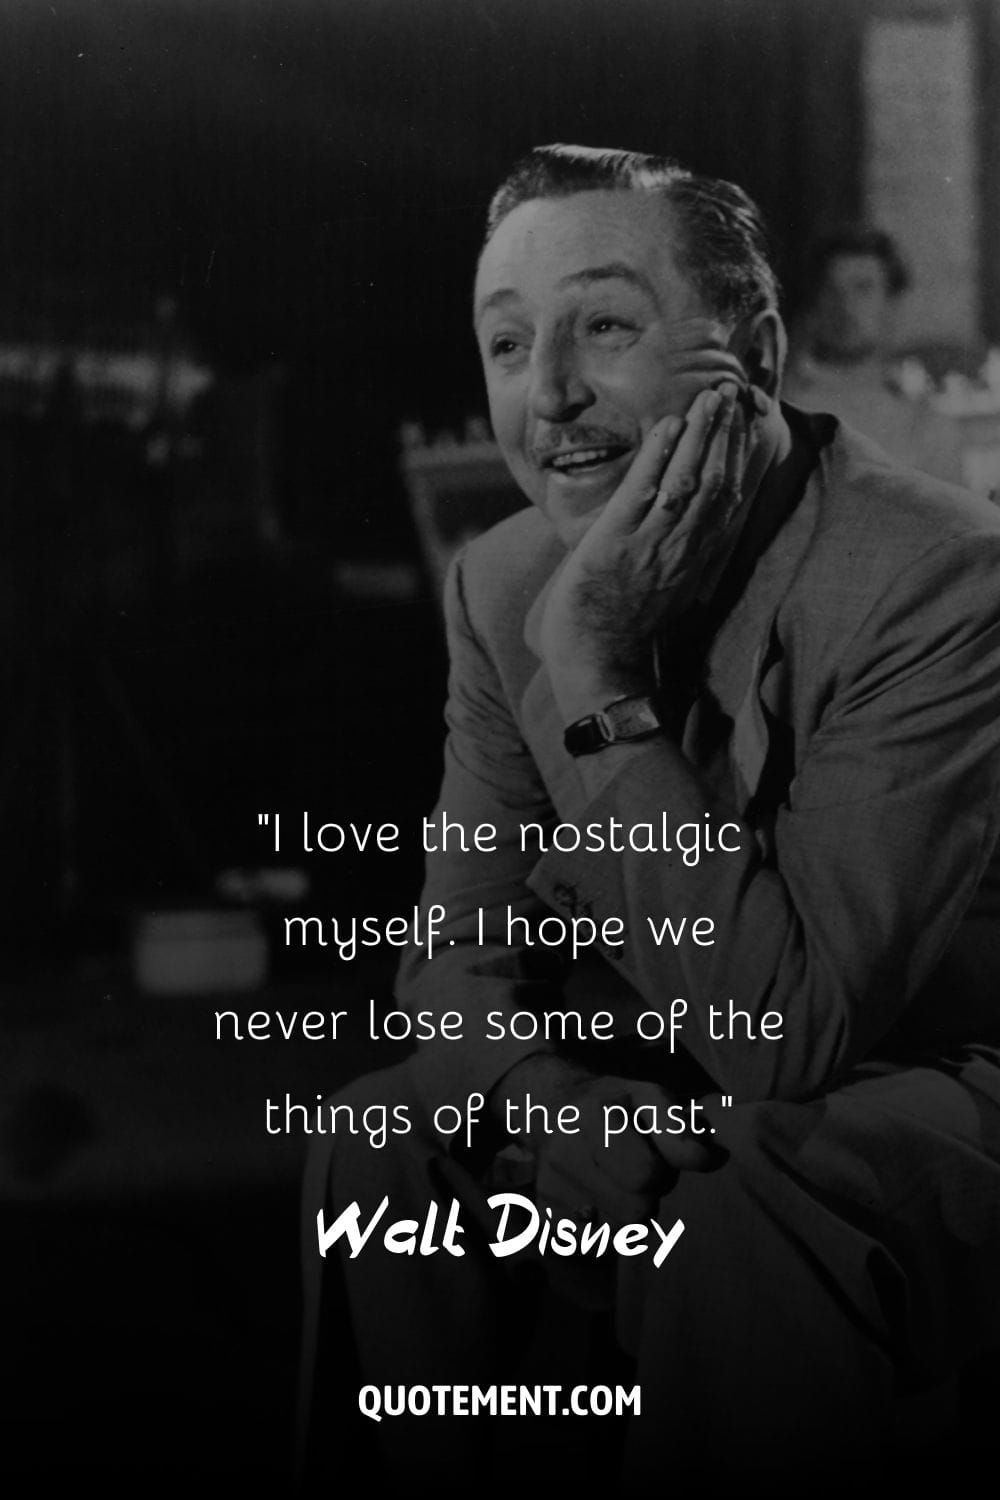 Walt Disney's iconic smile captures his creative spirit